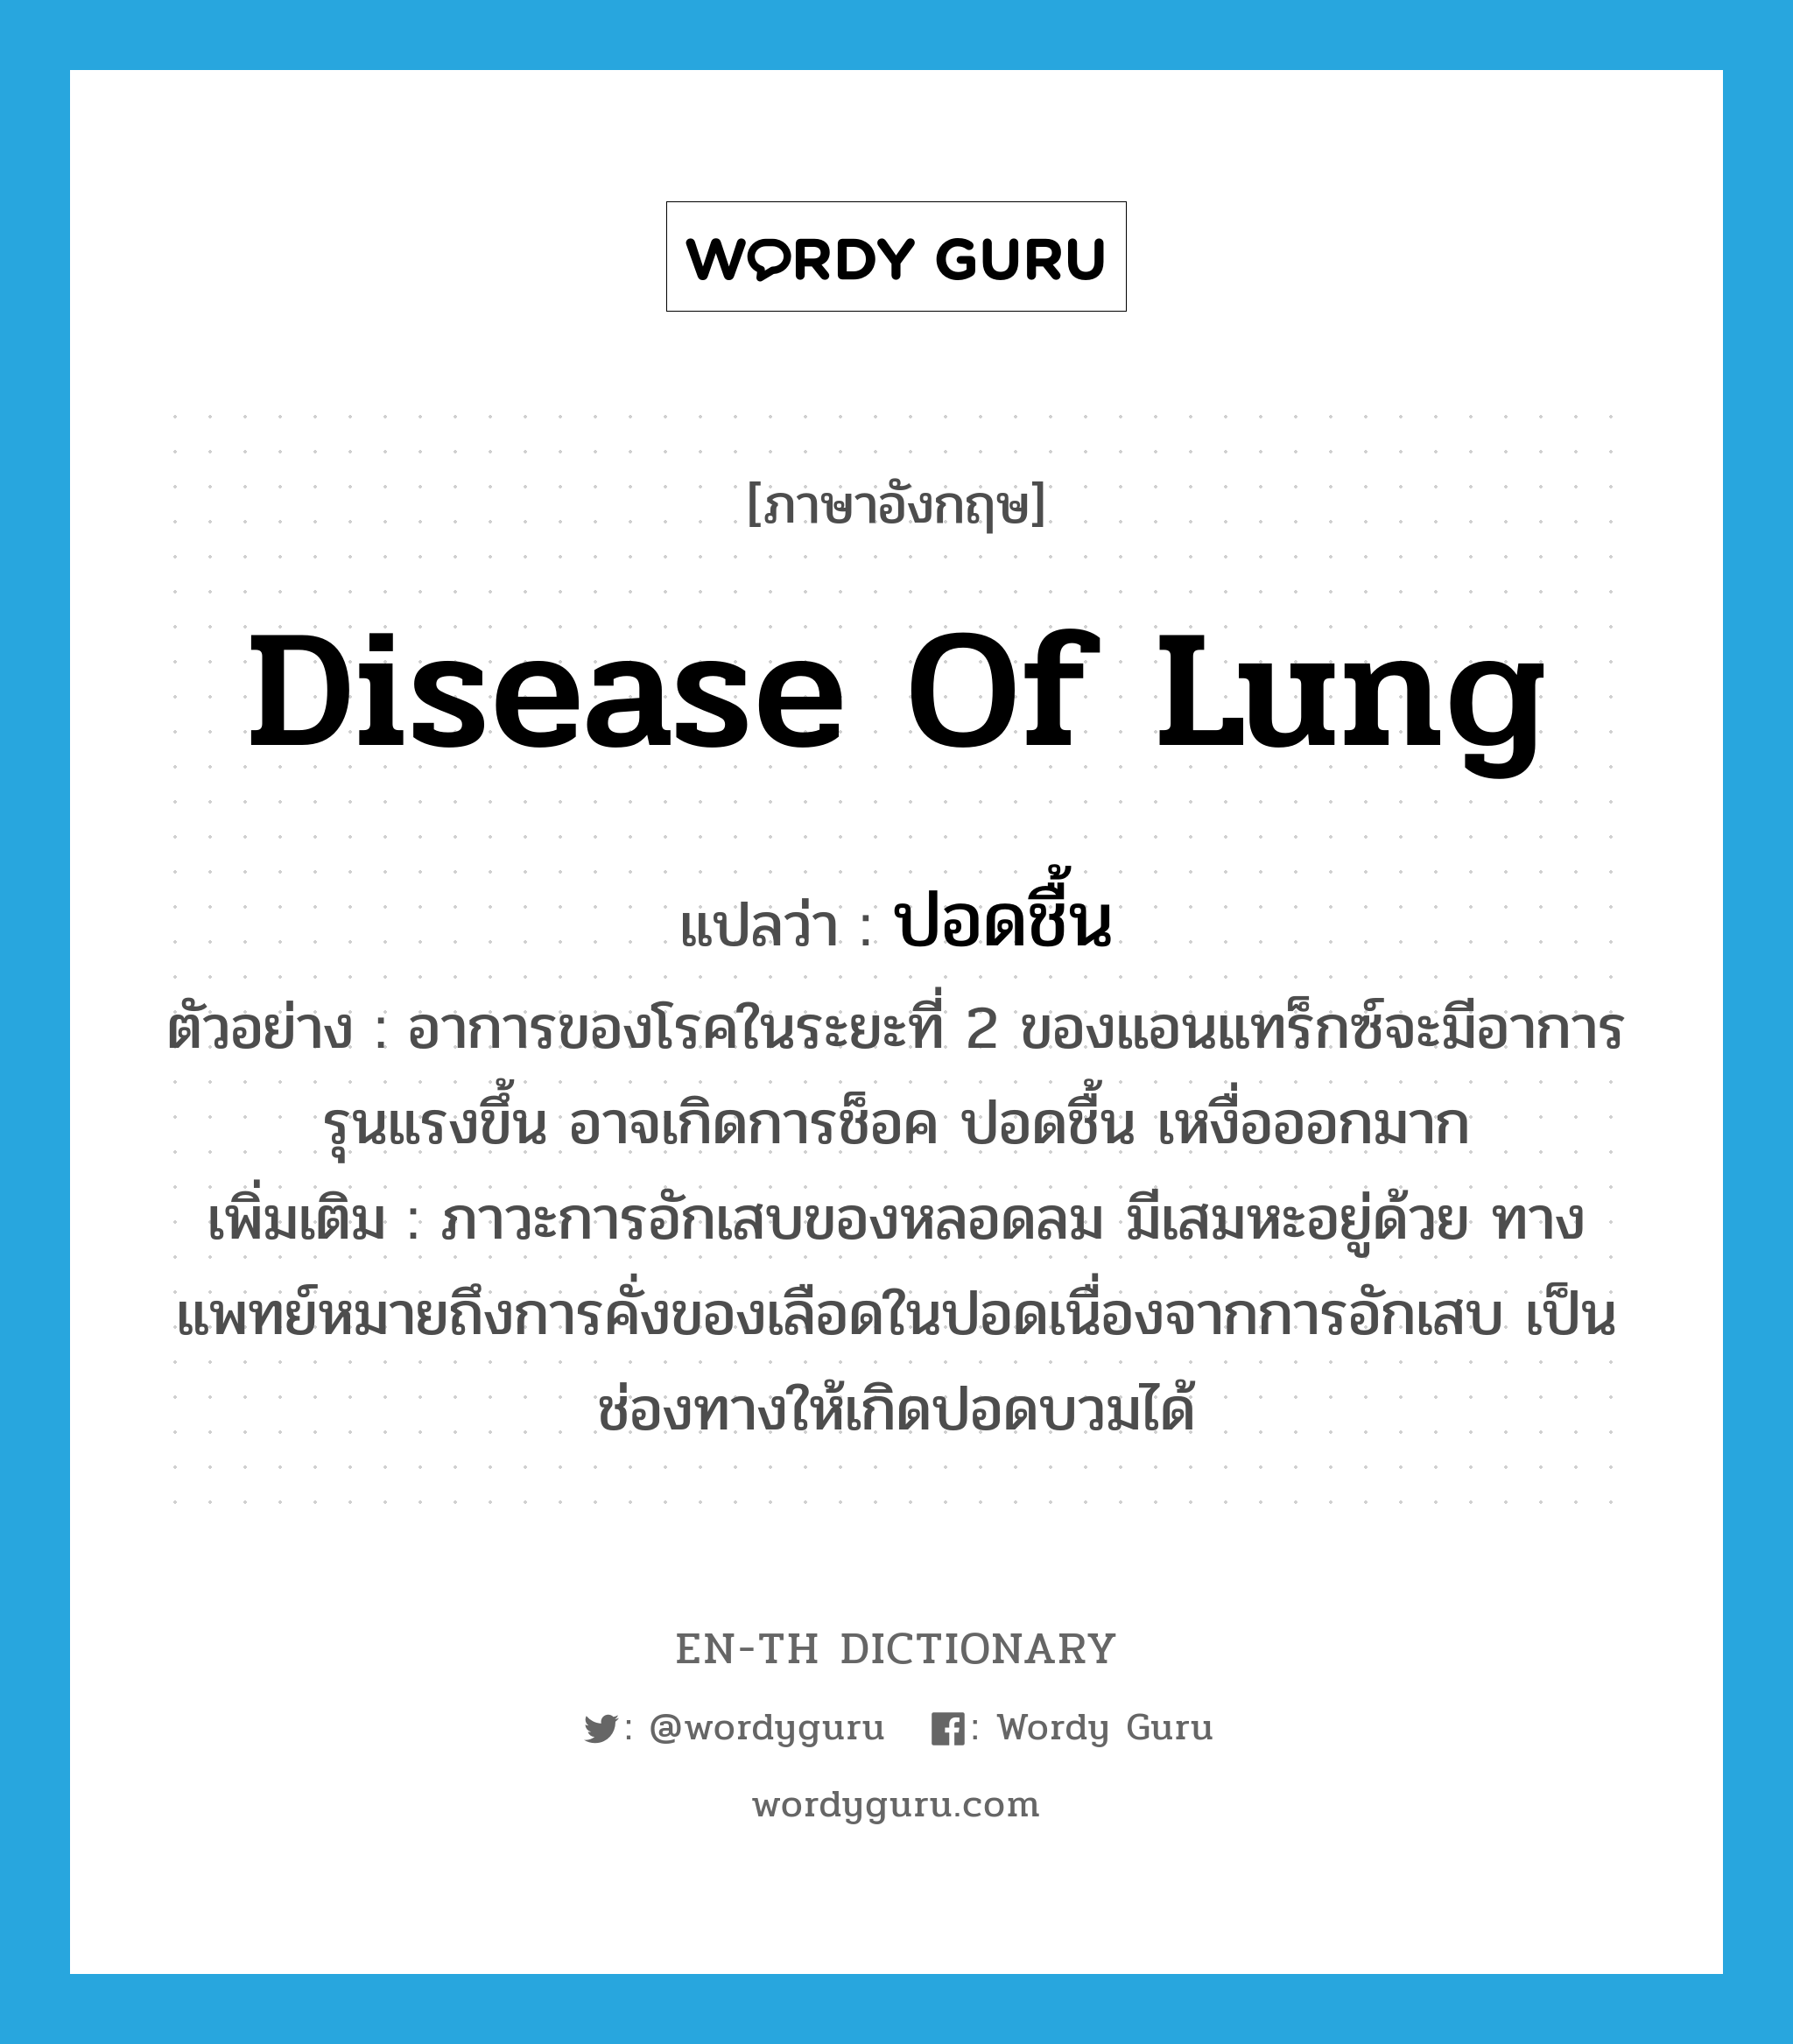 disease of lung แปลว่า?, คำศัพท์ภาษาอังกฤษ disease of lung แปลว่า ปอดชื้น ประเภท N ตัวอย่าง อาการของโรคในระยะที่ 2 ของแอนแทร็กซ์จะมีอาการรุนแรงขึ้น อาจเกิดการช็อค ปอดชื้น เหงื่อออกมาก เพิ่มเติม ภาวะการอักเสบของหลอดลม มีเสมหะอยู่ด้วย ทางแพทย์หมายถึงการคั่งของเลือดในปอดเนื่องจากการอักเสบ เป็นช่องทางให้เกิดปอดบวมได้ หมวด N